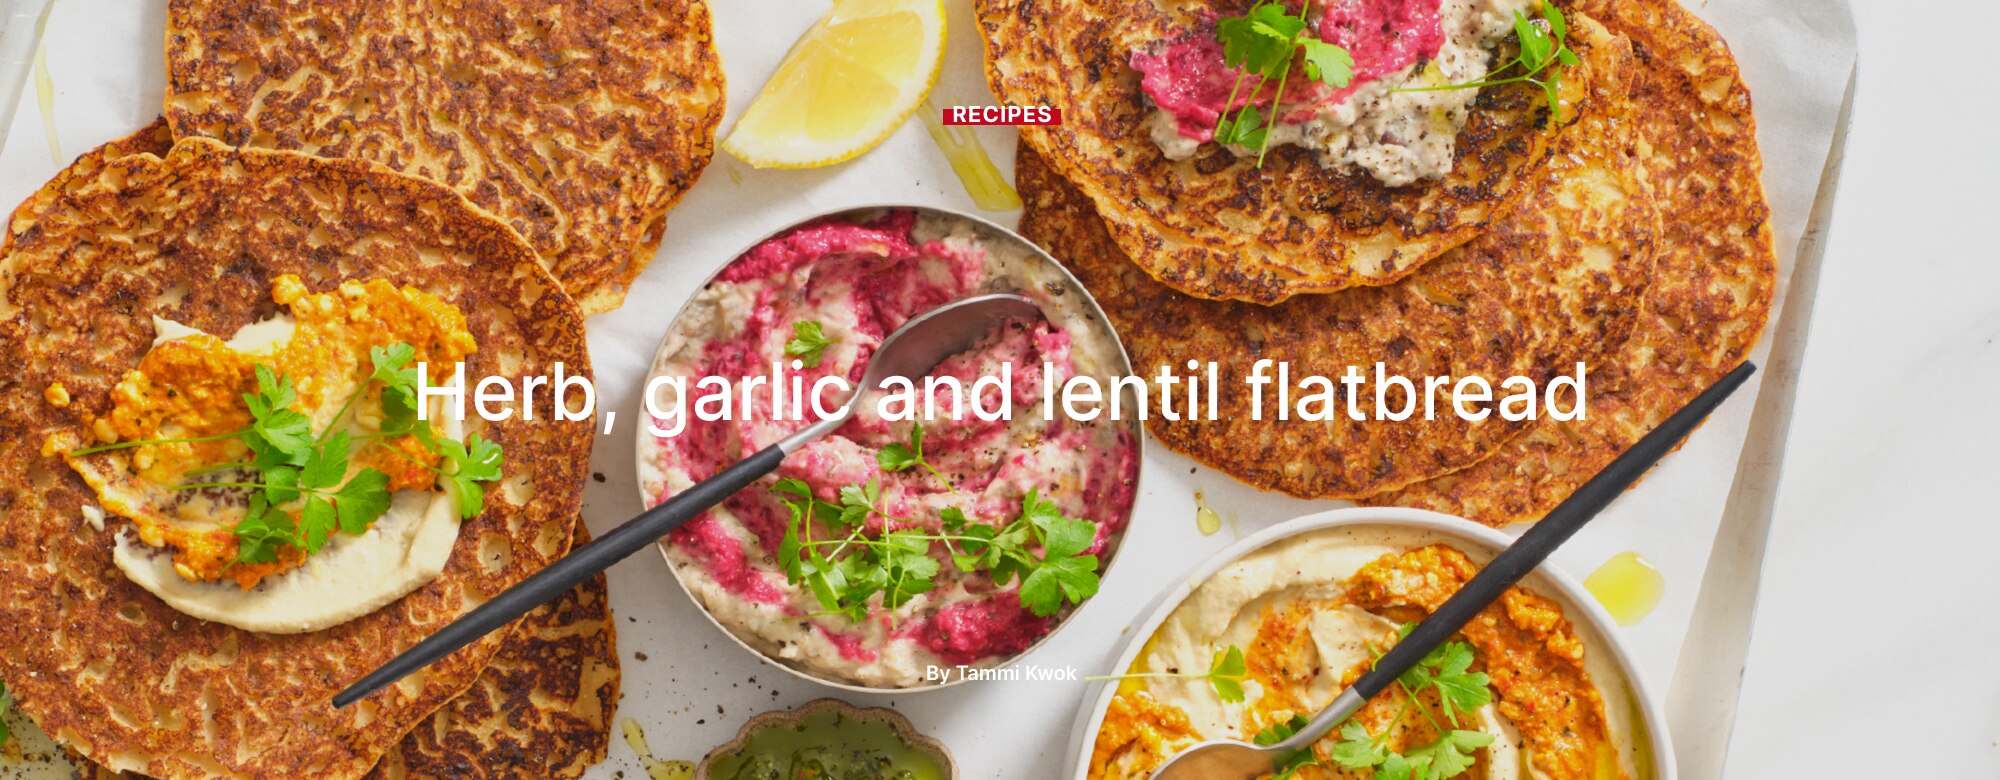 Herb, garlic and lentil flatbread